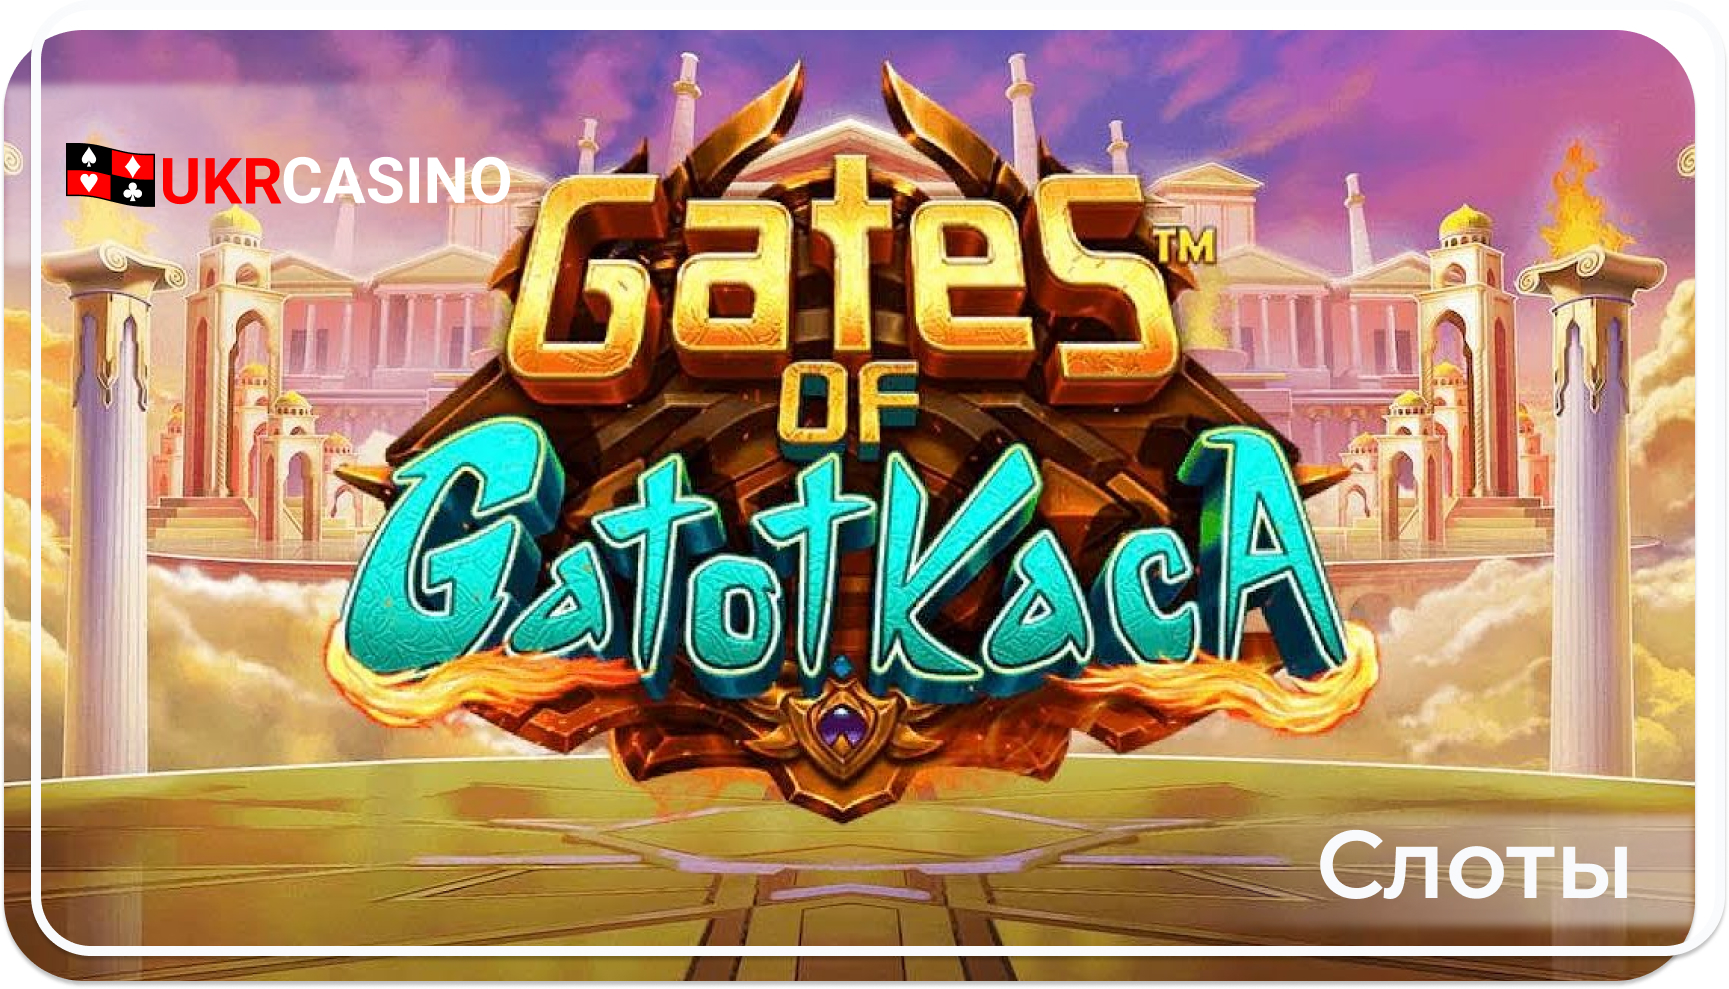 Gates of Gatot Kaca - Pragmatic Play